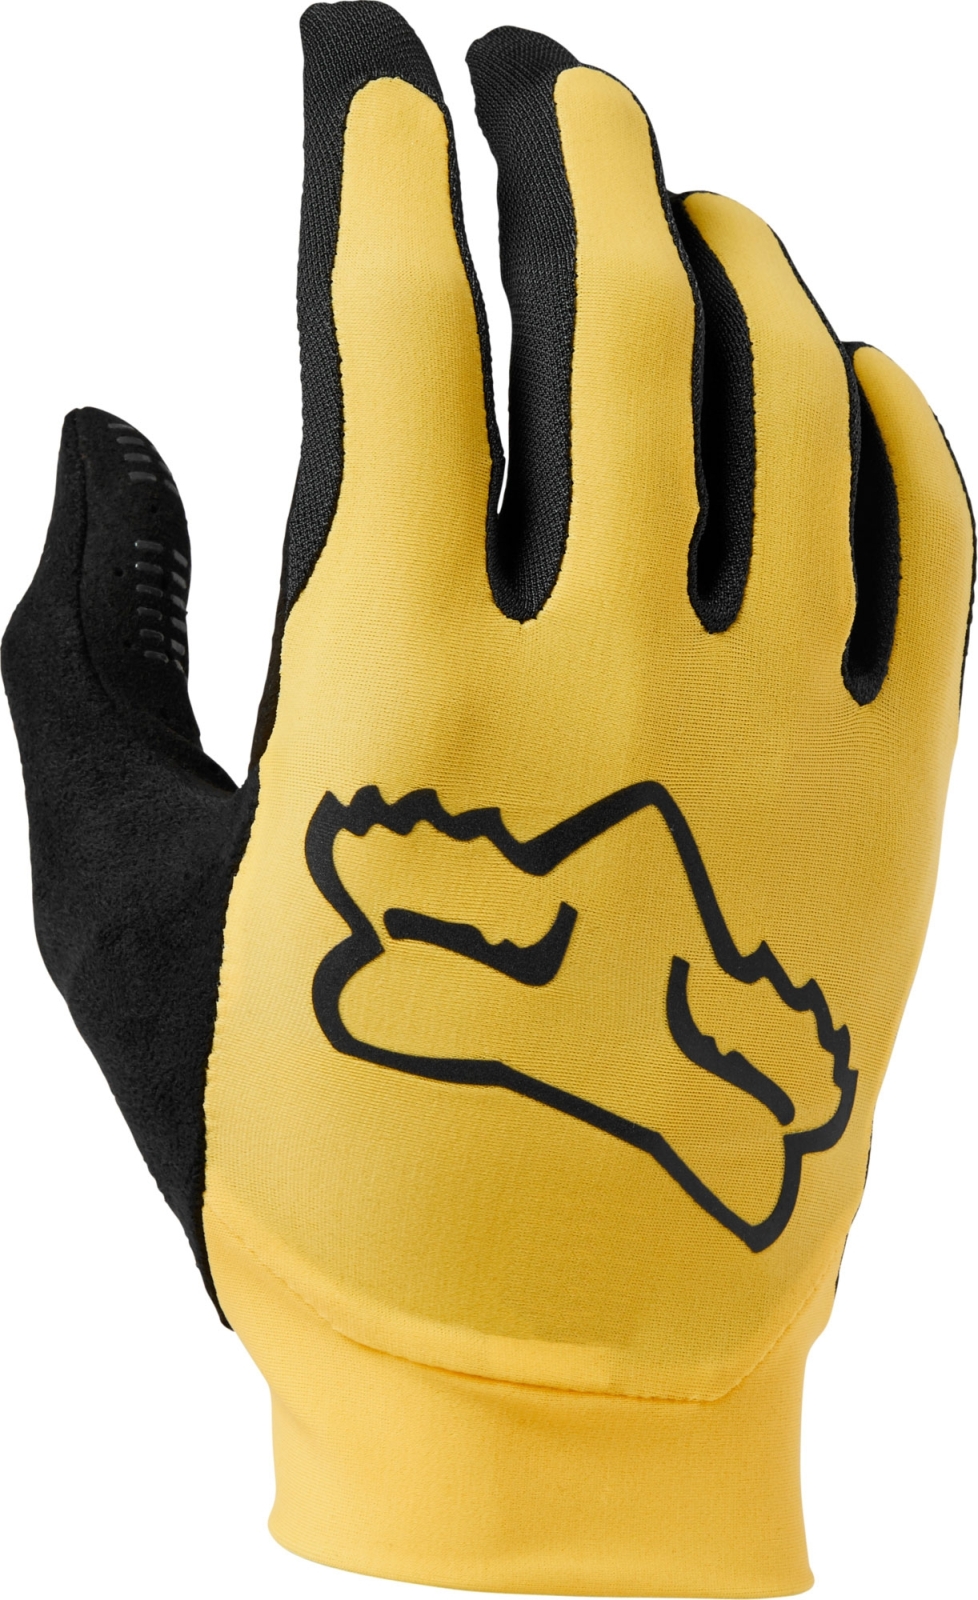 E-shop FOX Flexair Glove - pear yellow 8